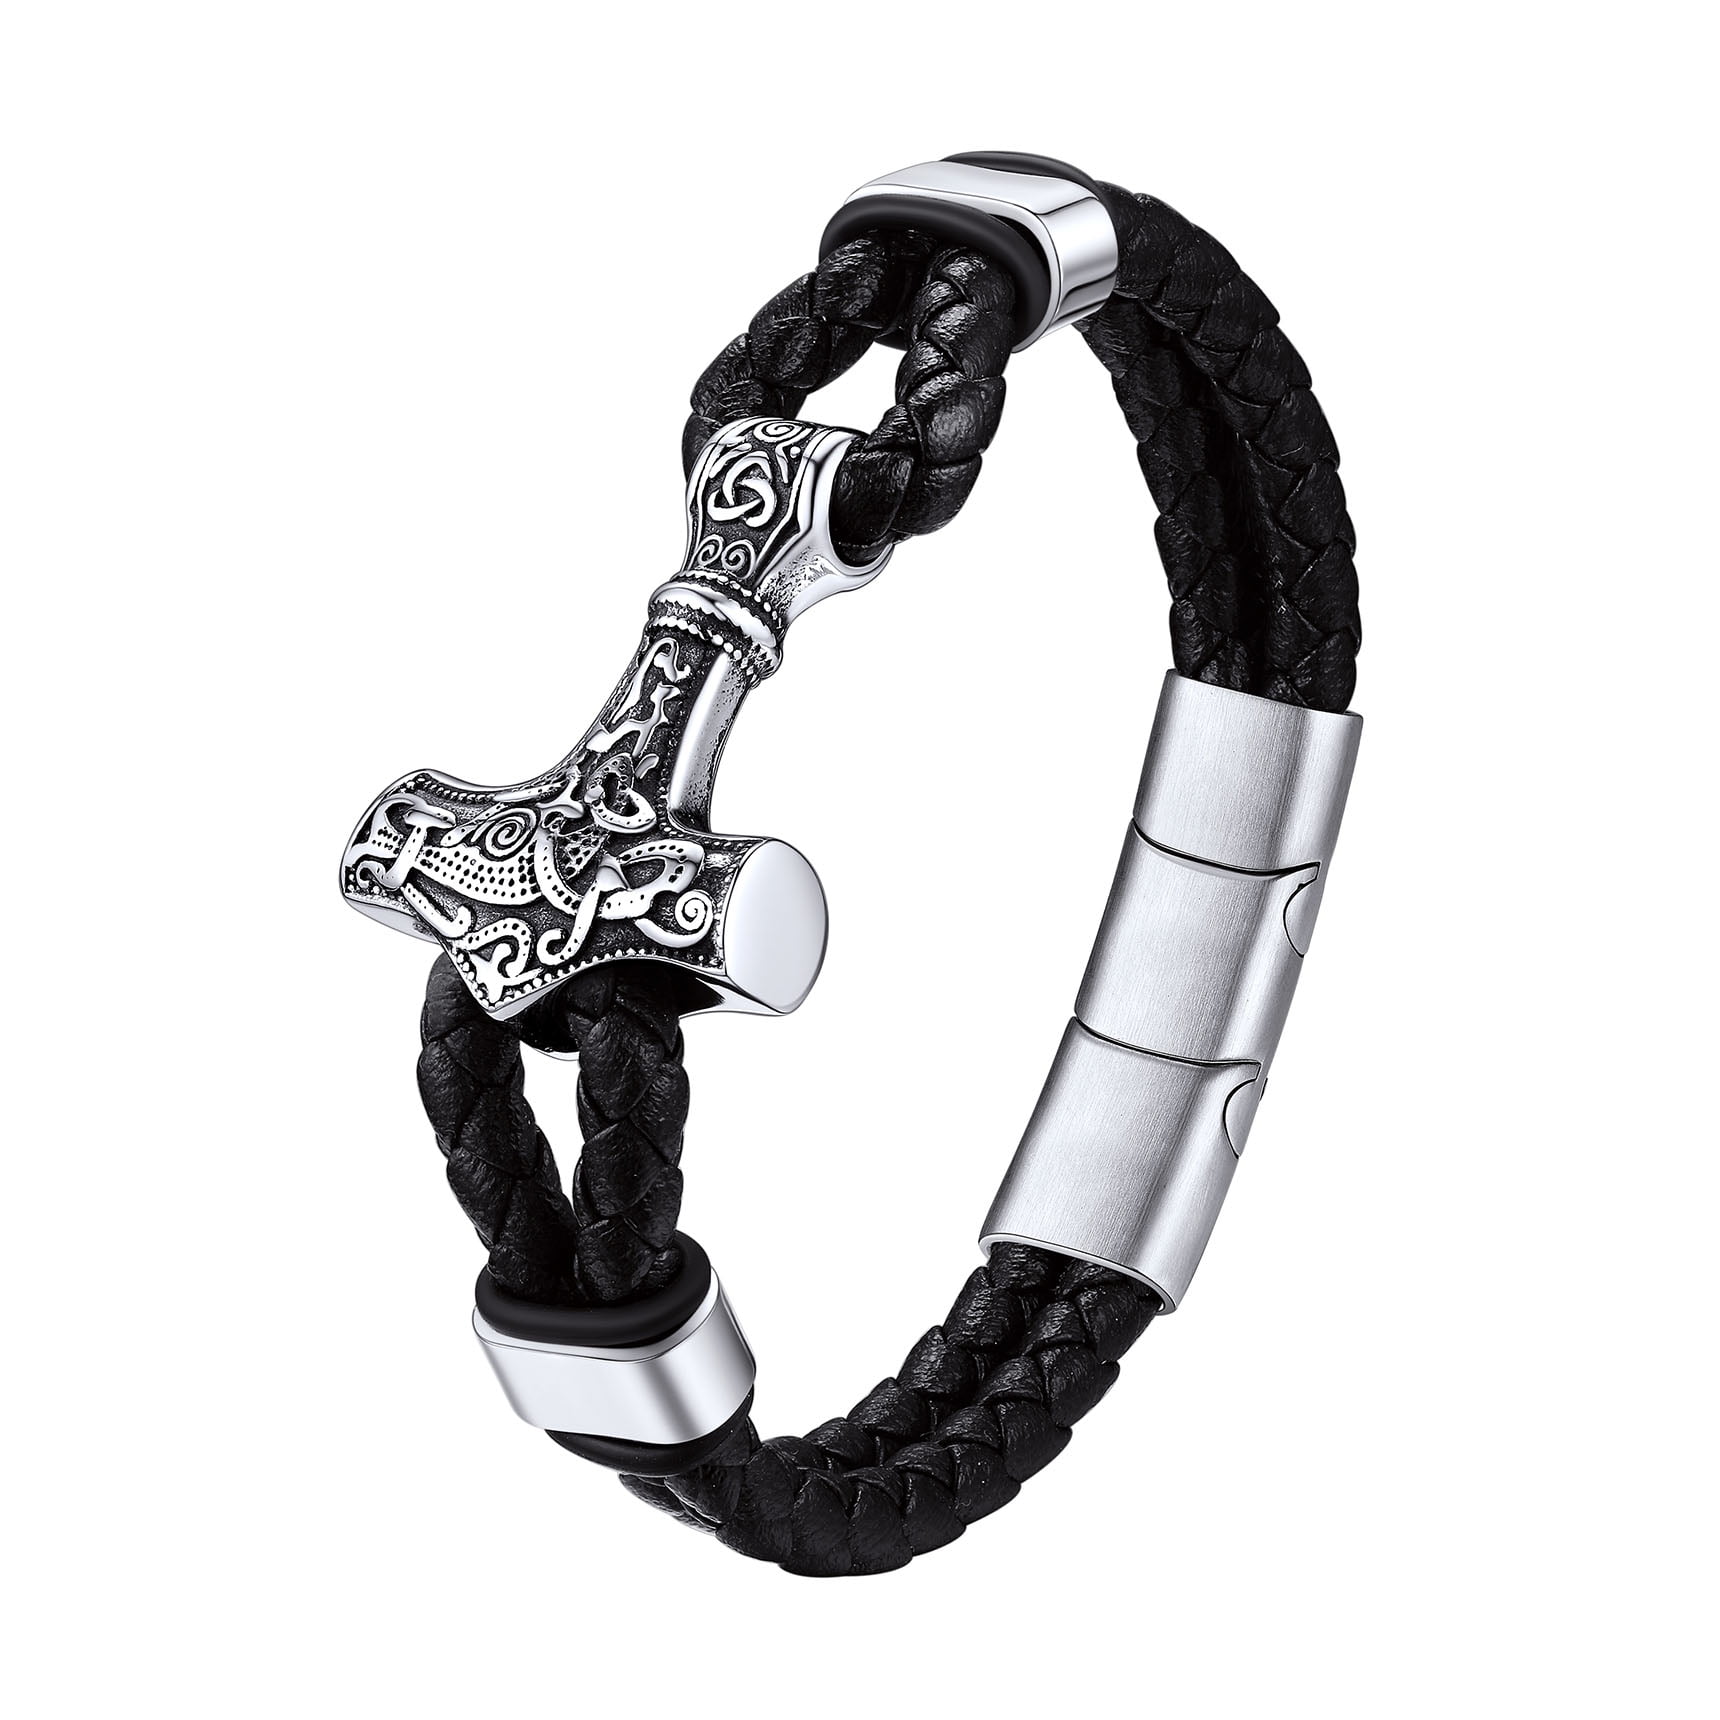 Thor Mjolnir Hammer Bracelet - Iconic Ring